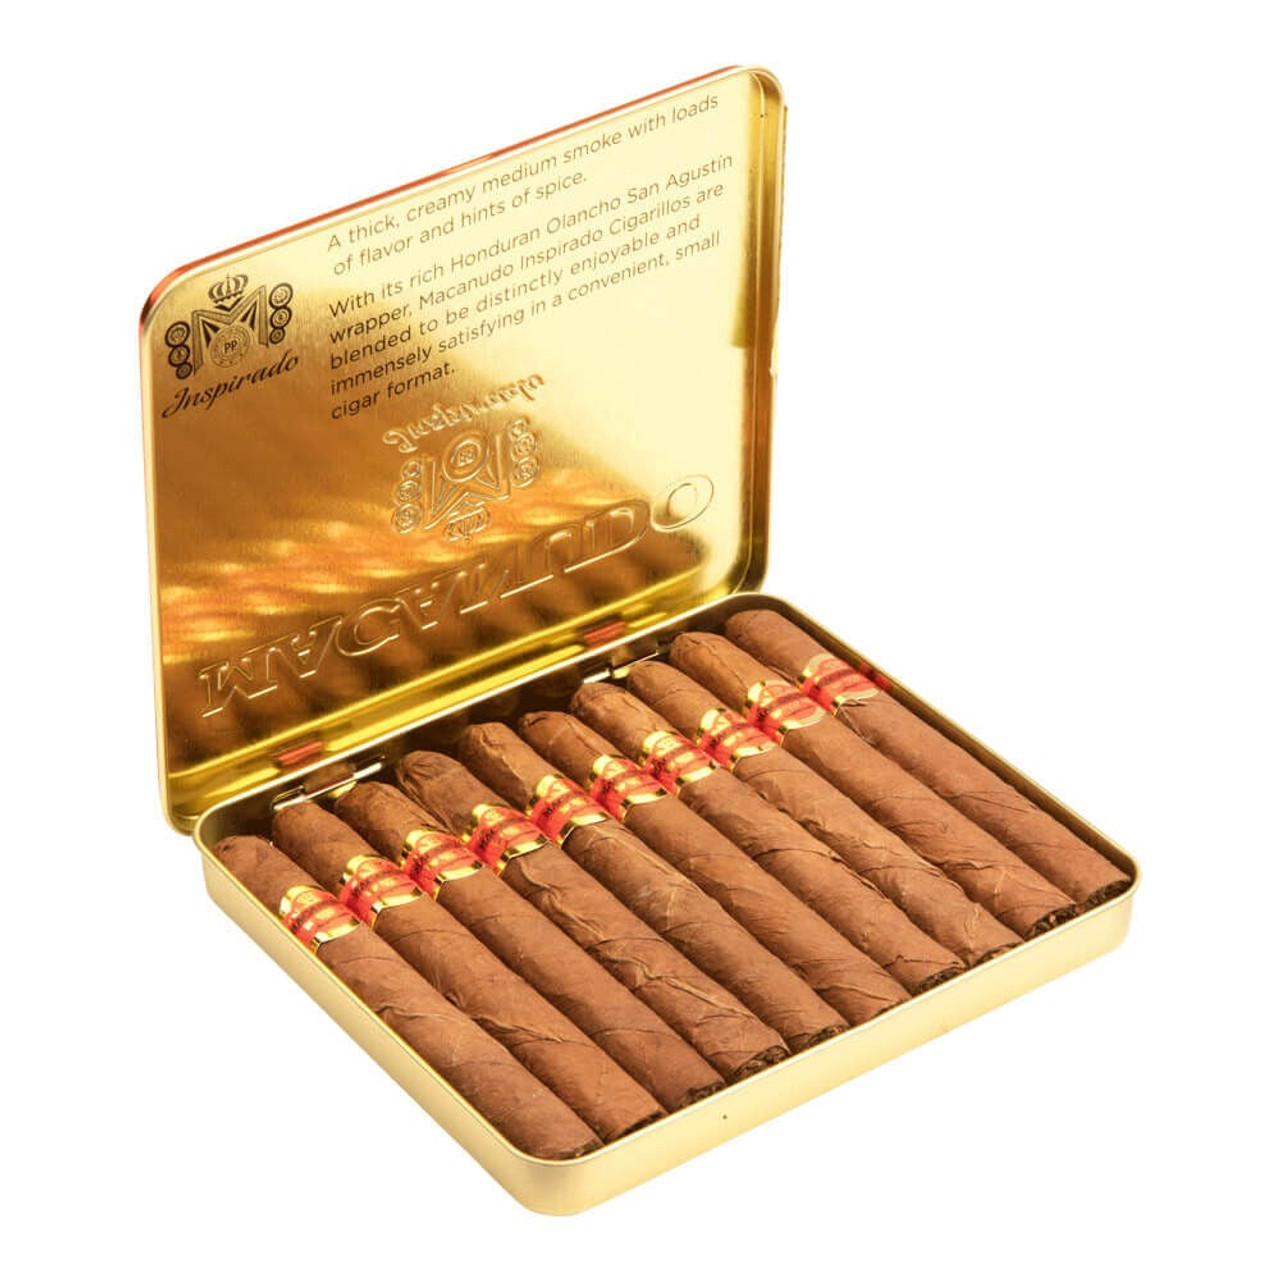 Macanudo Inspirado Orange Cigarillo Cigars - 4.18 x 32 (10 Tins of 10 (100 total)) Open